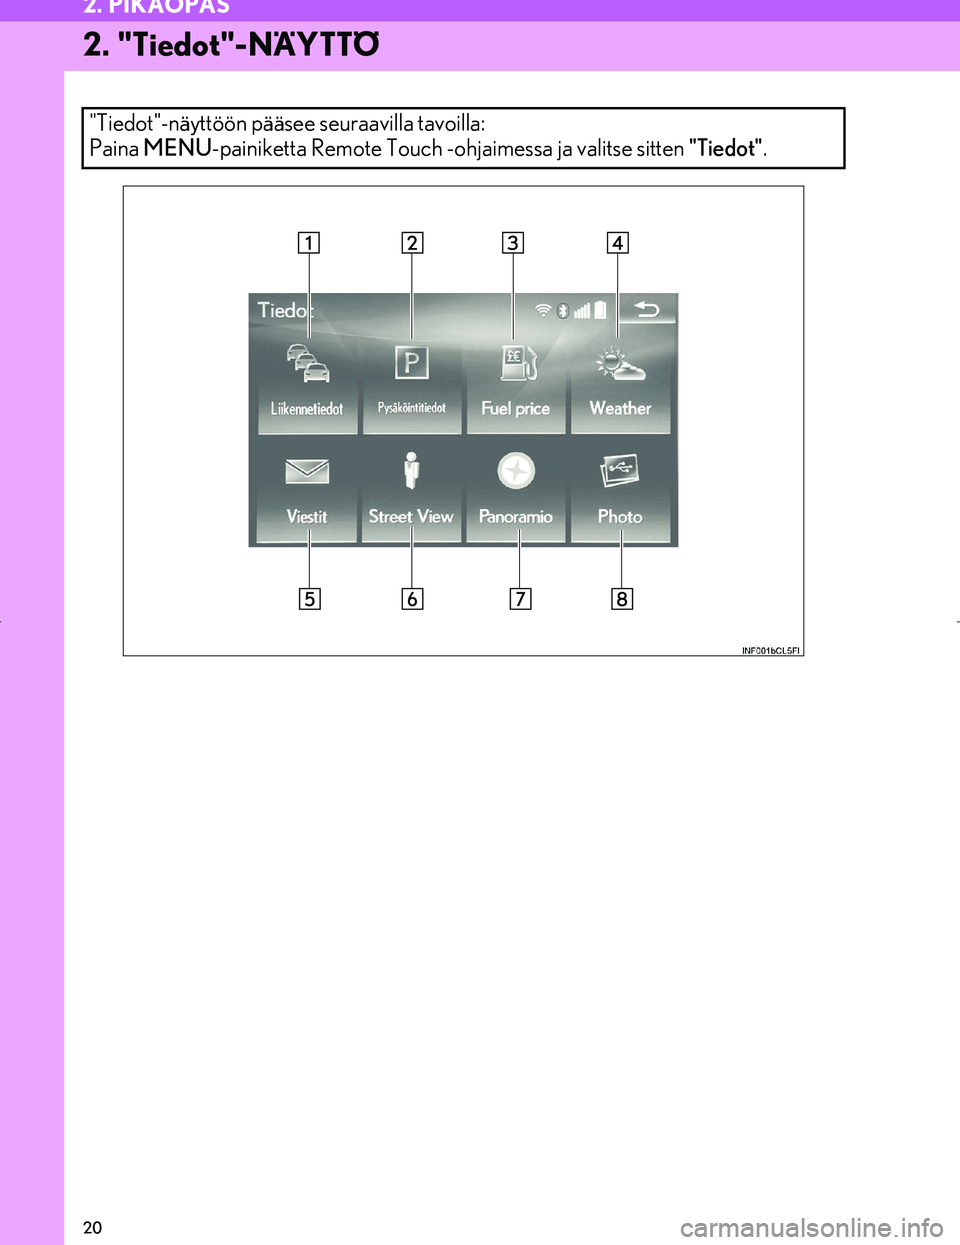 Lexus IS300h 2016  Navigointi manuaalinen (in Finnish) 20
2. PIKAOPAS
OM53E02FI
2. "Tiedot"-NÄYTTÖ
"Tiedot"-näyttöön pääsee seuraavilla tavoilla: 
Paina MENU-painiketta Remote Touch -ohjaimessa ja valitse sitten "Tiedot" .
OM53E02FI.book  Page 20  